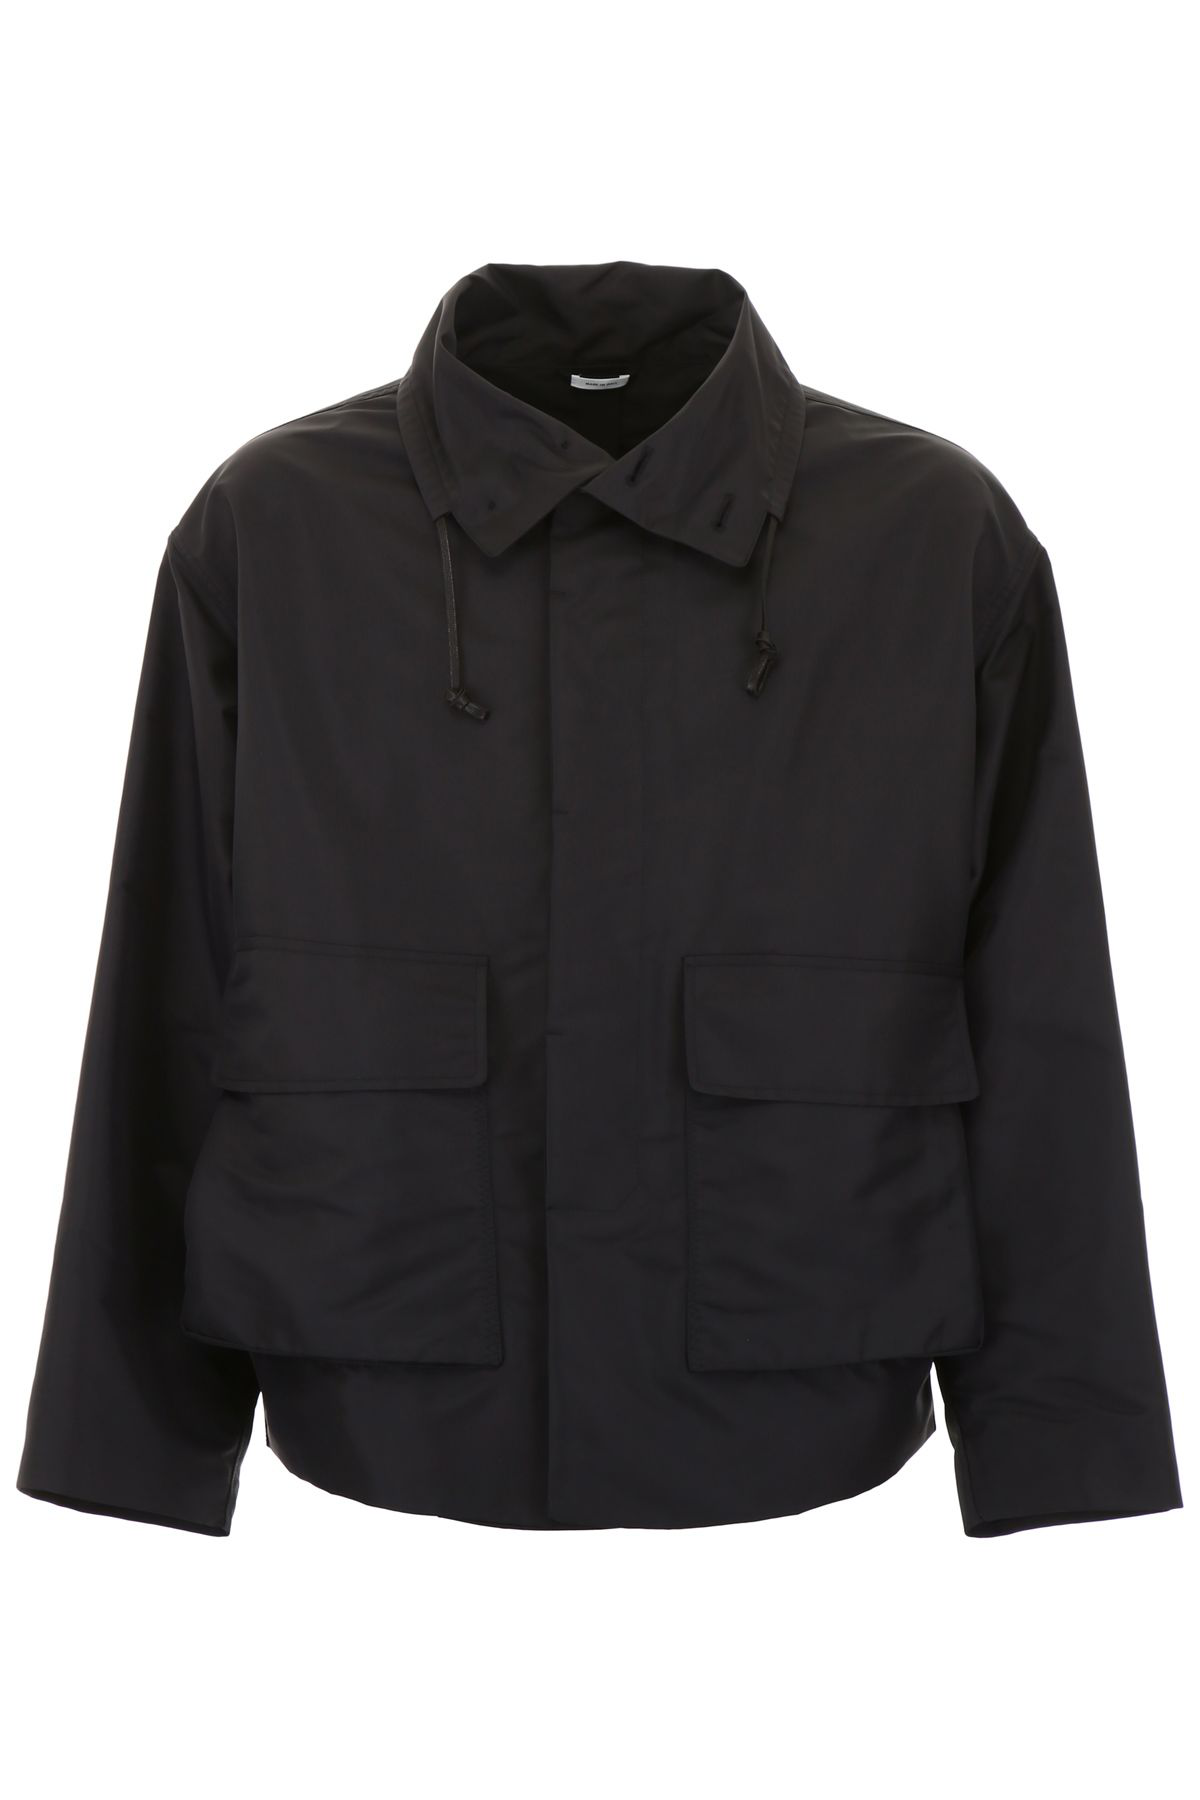 Jil Sander Jacket With High Neck In Black (Black) | ModeSens